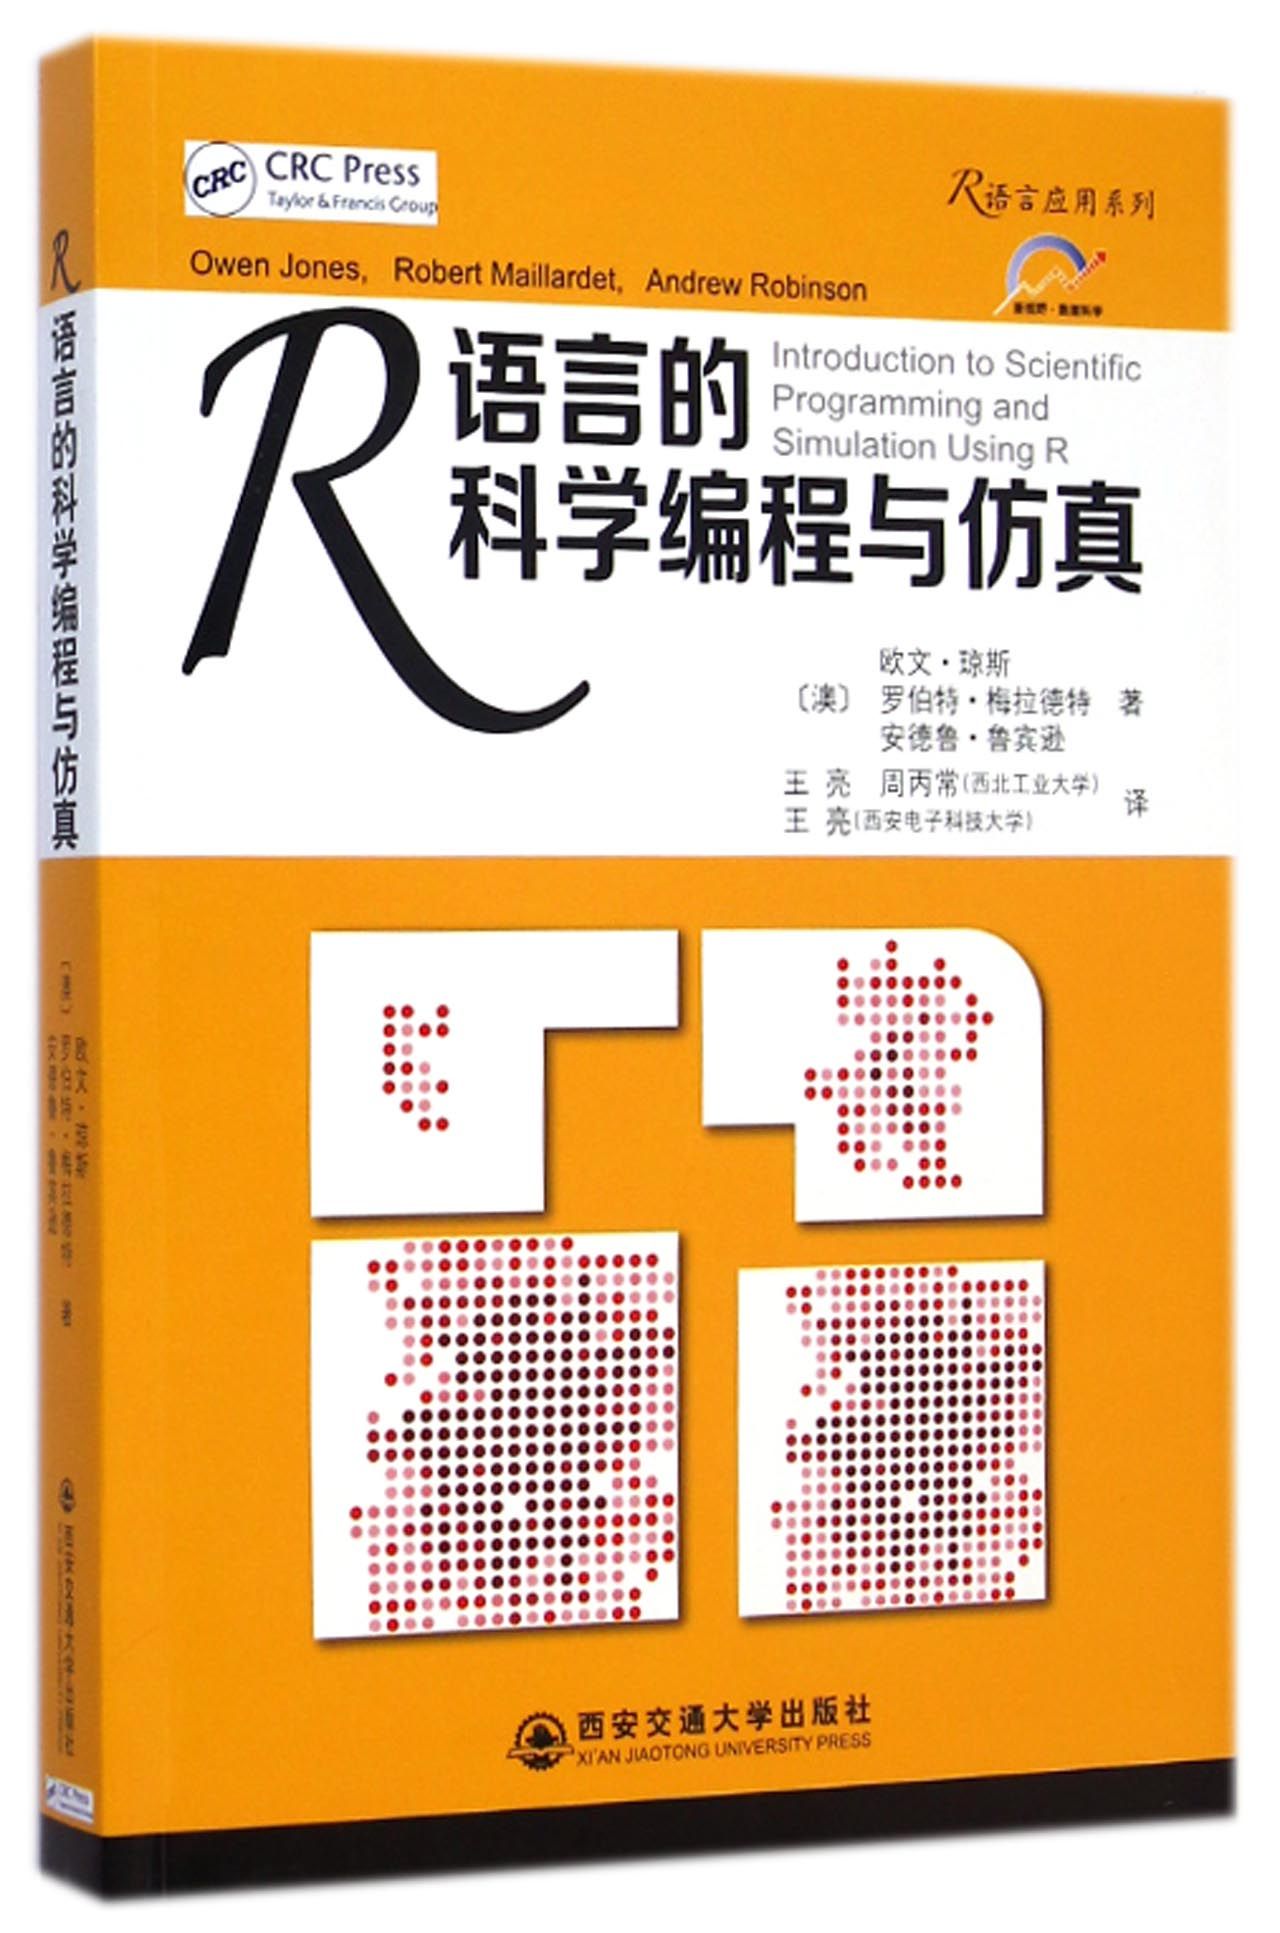 正版图书R语言的科学编程与/R语言应用系列(澳)欧文·琼斯(Owen Jones)西安交通大学出版社9787560562421